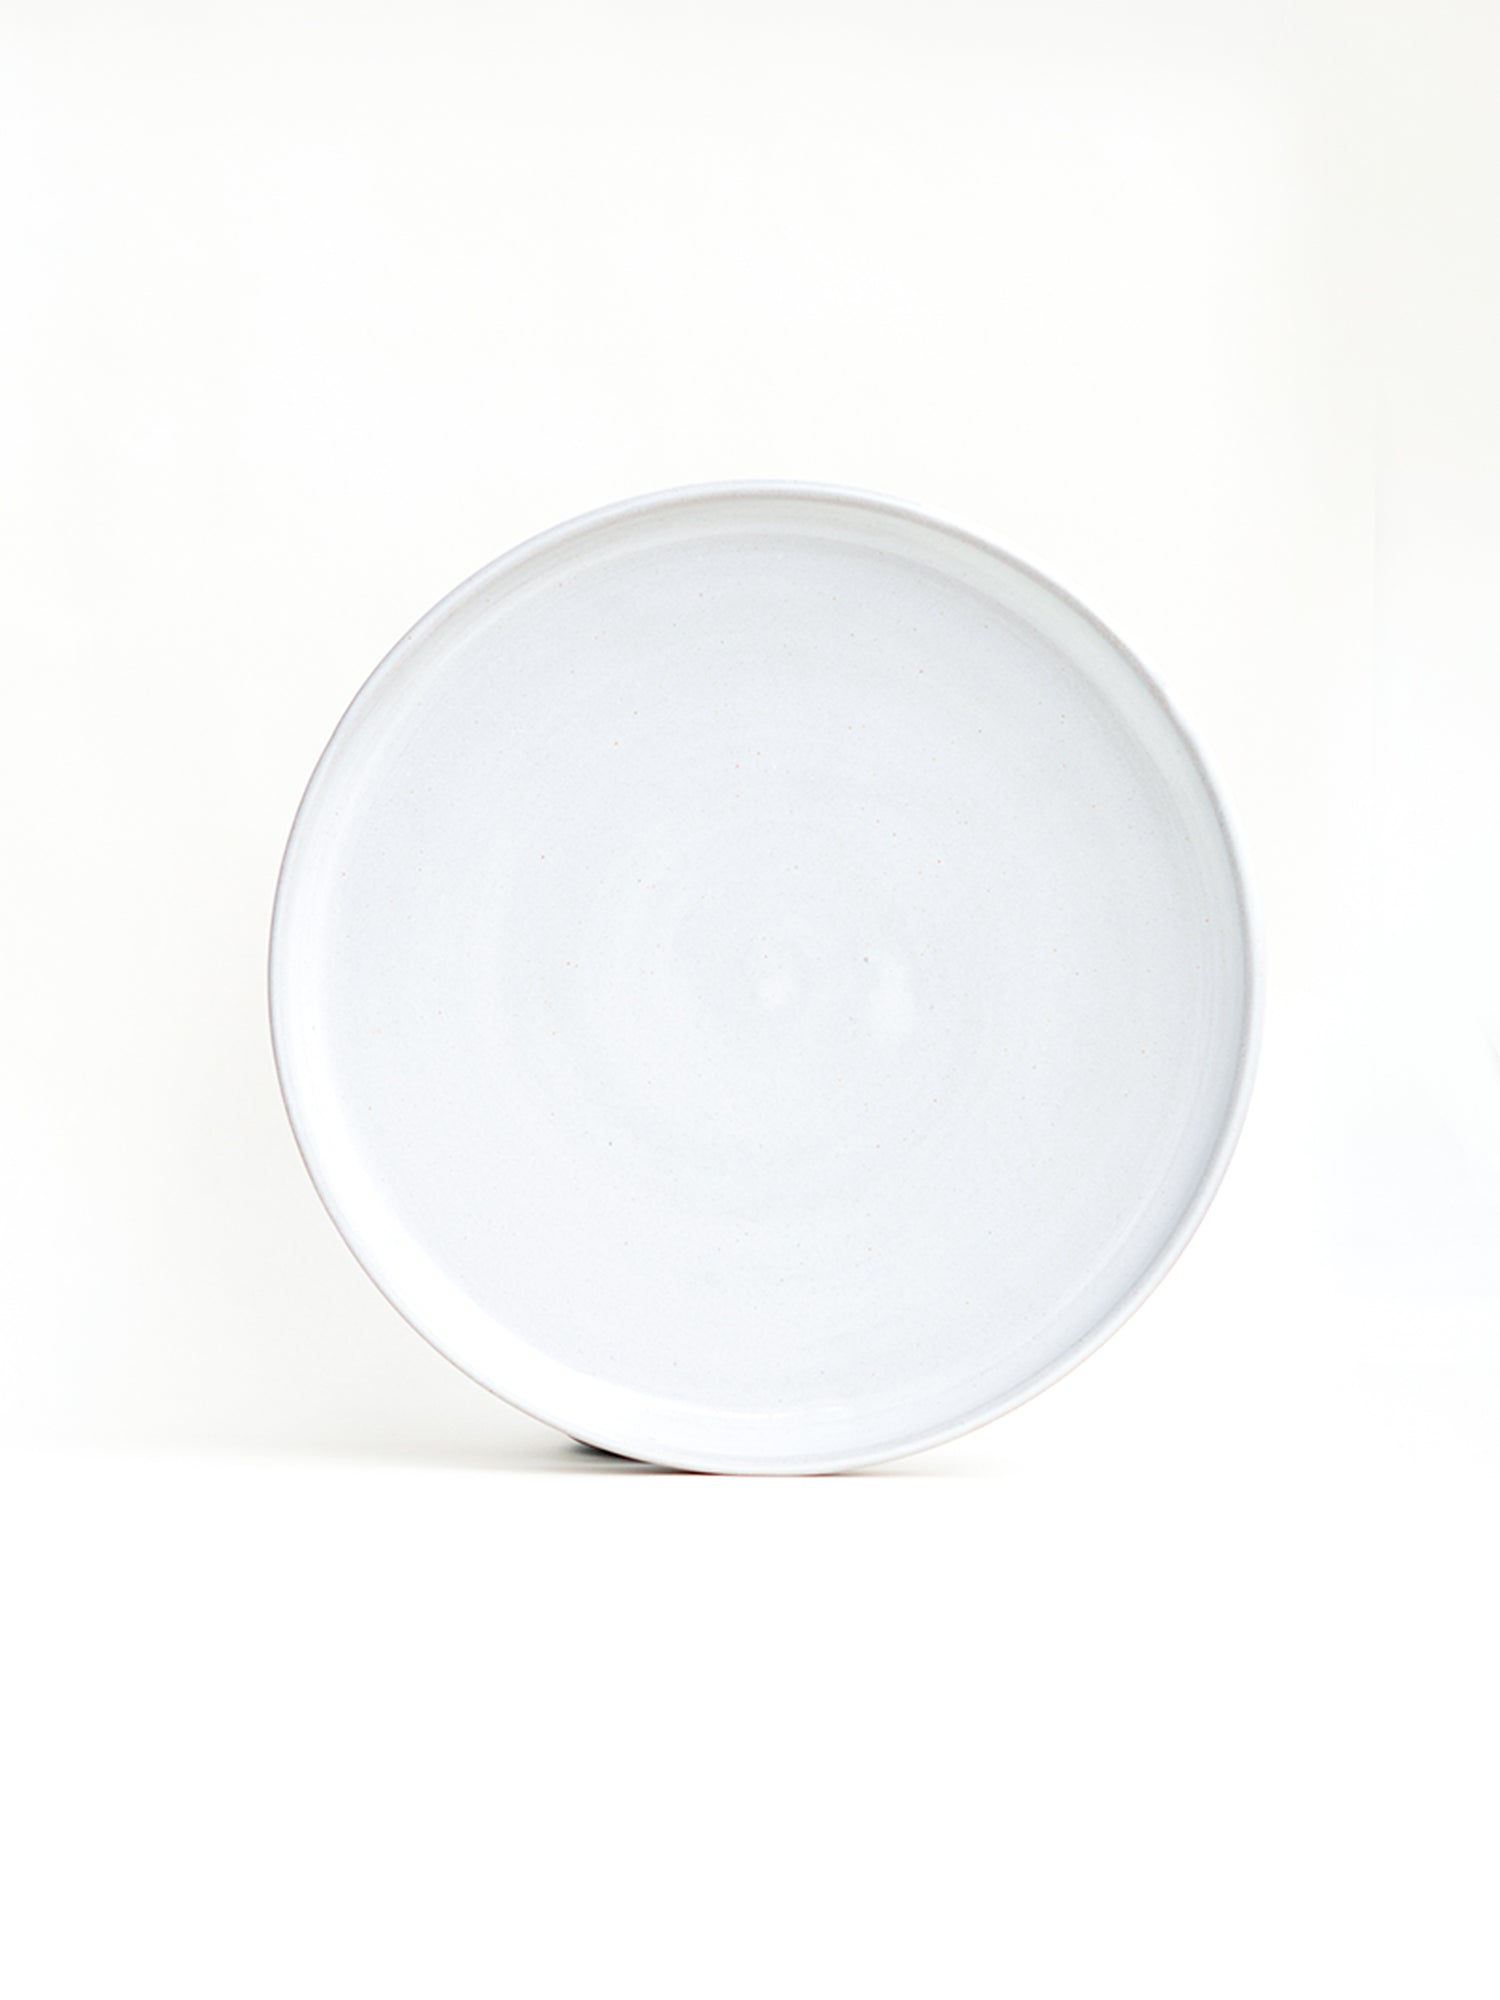 Snowdrop White Stoneware Dinner Plates